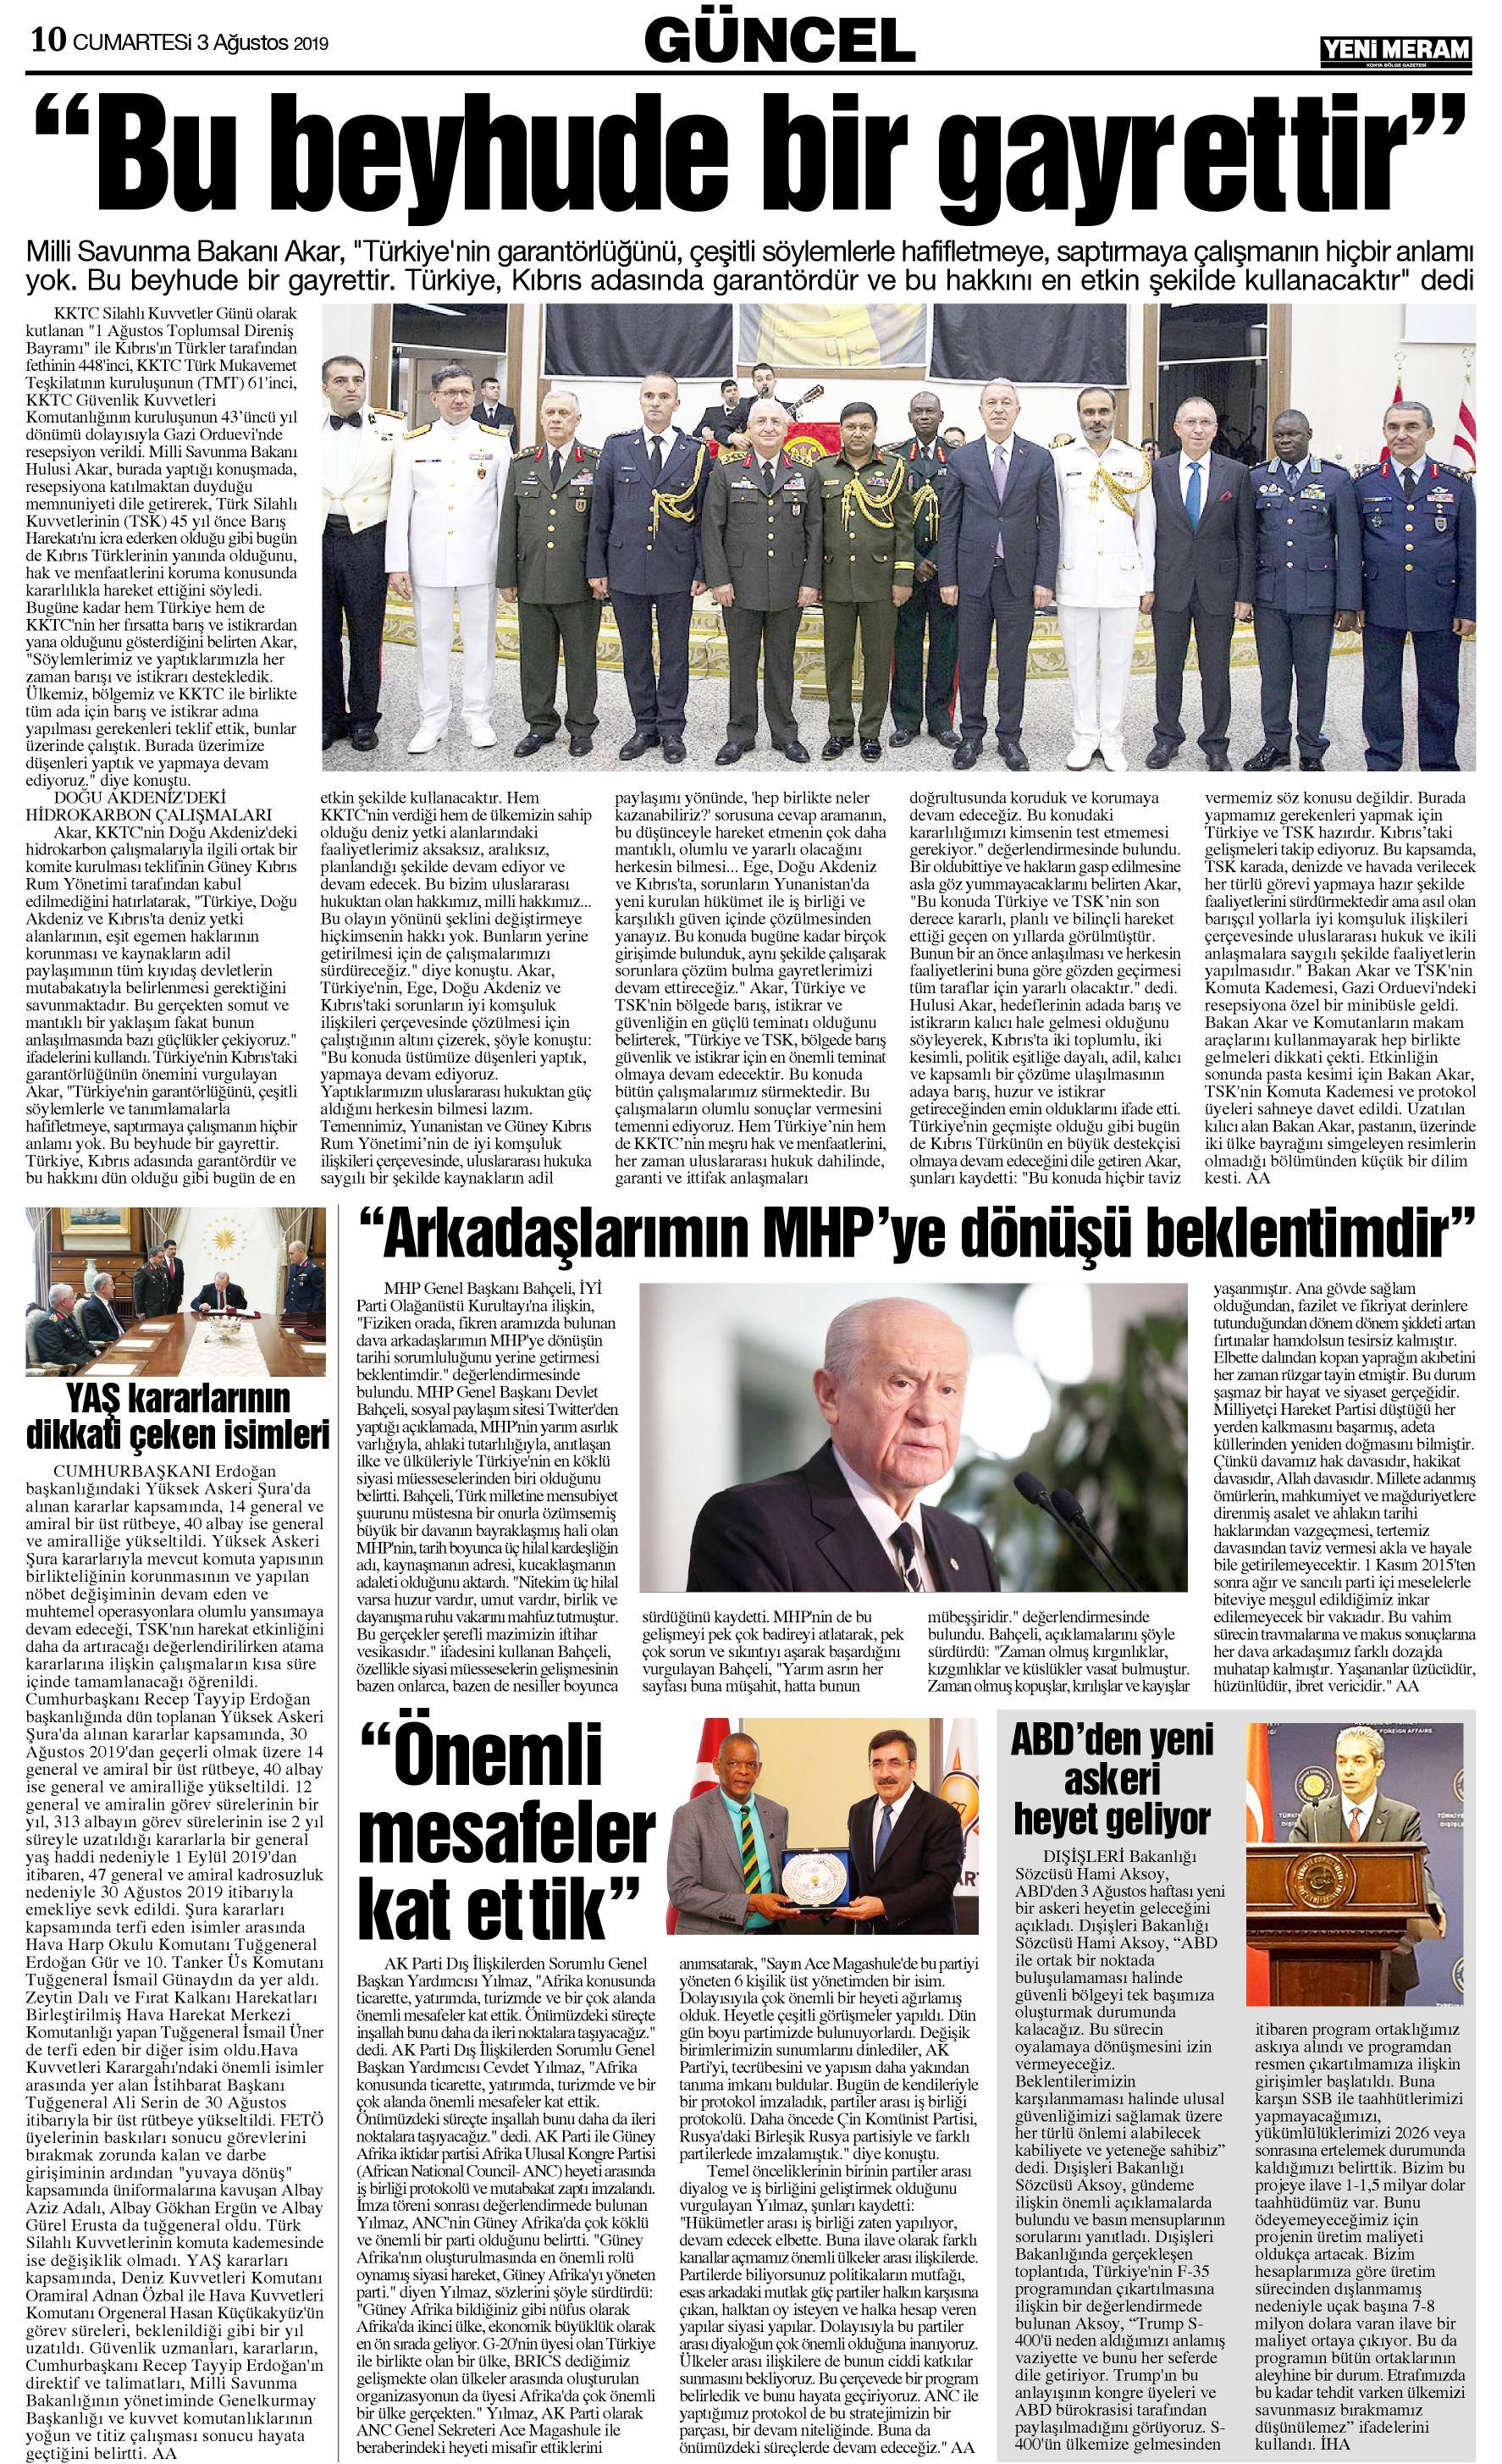 3 Ağustos 2019 Yeni Meram Gazetesi